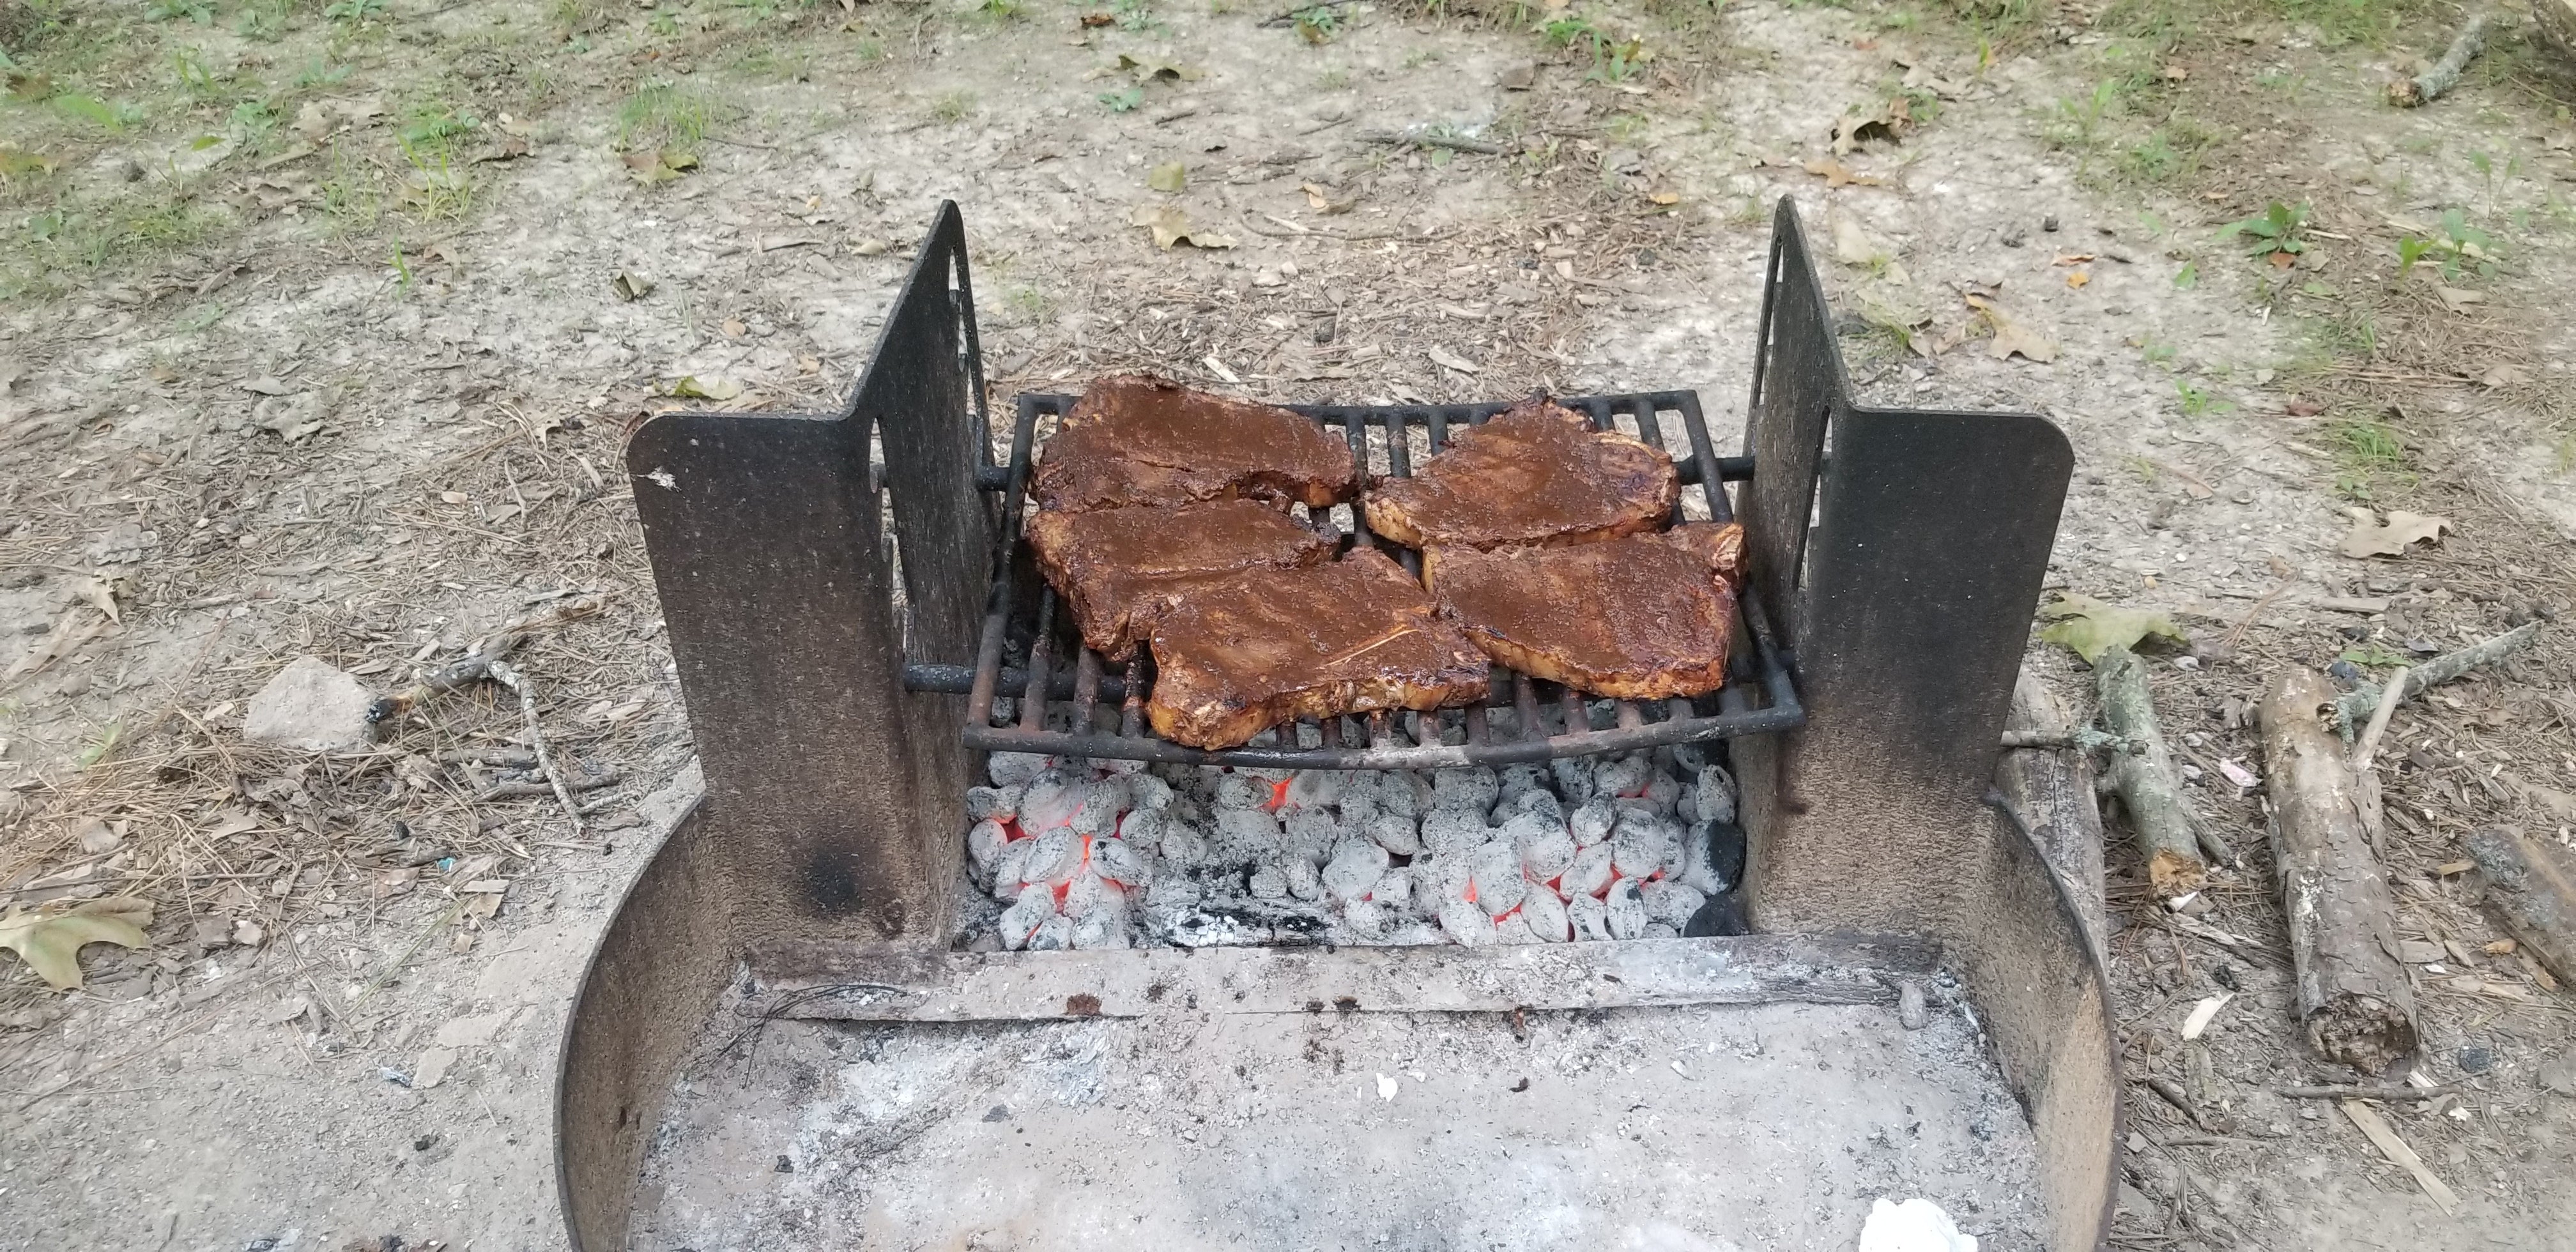 steak nite